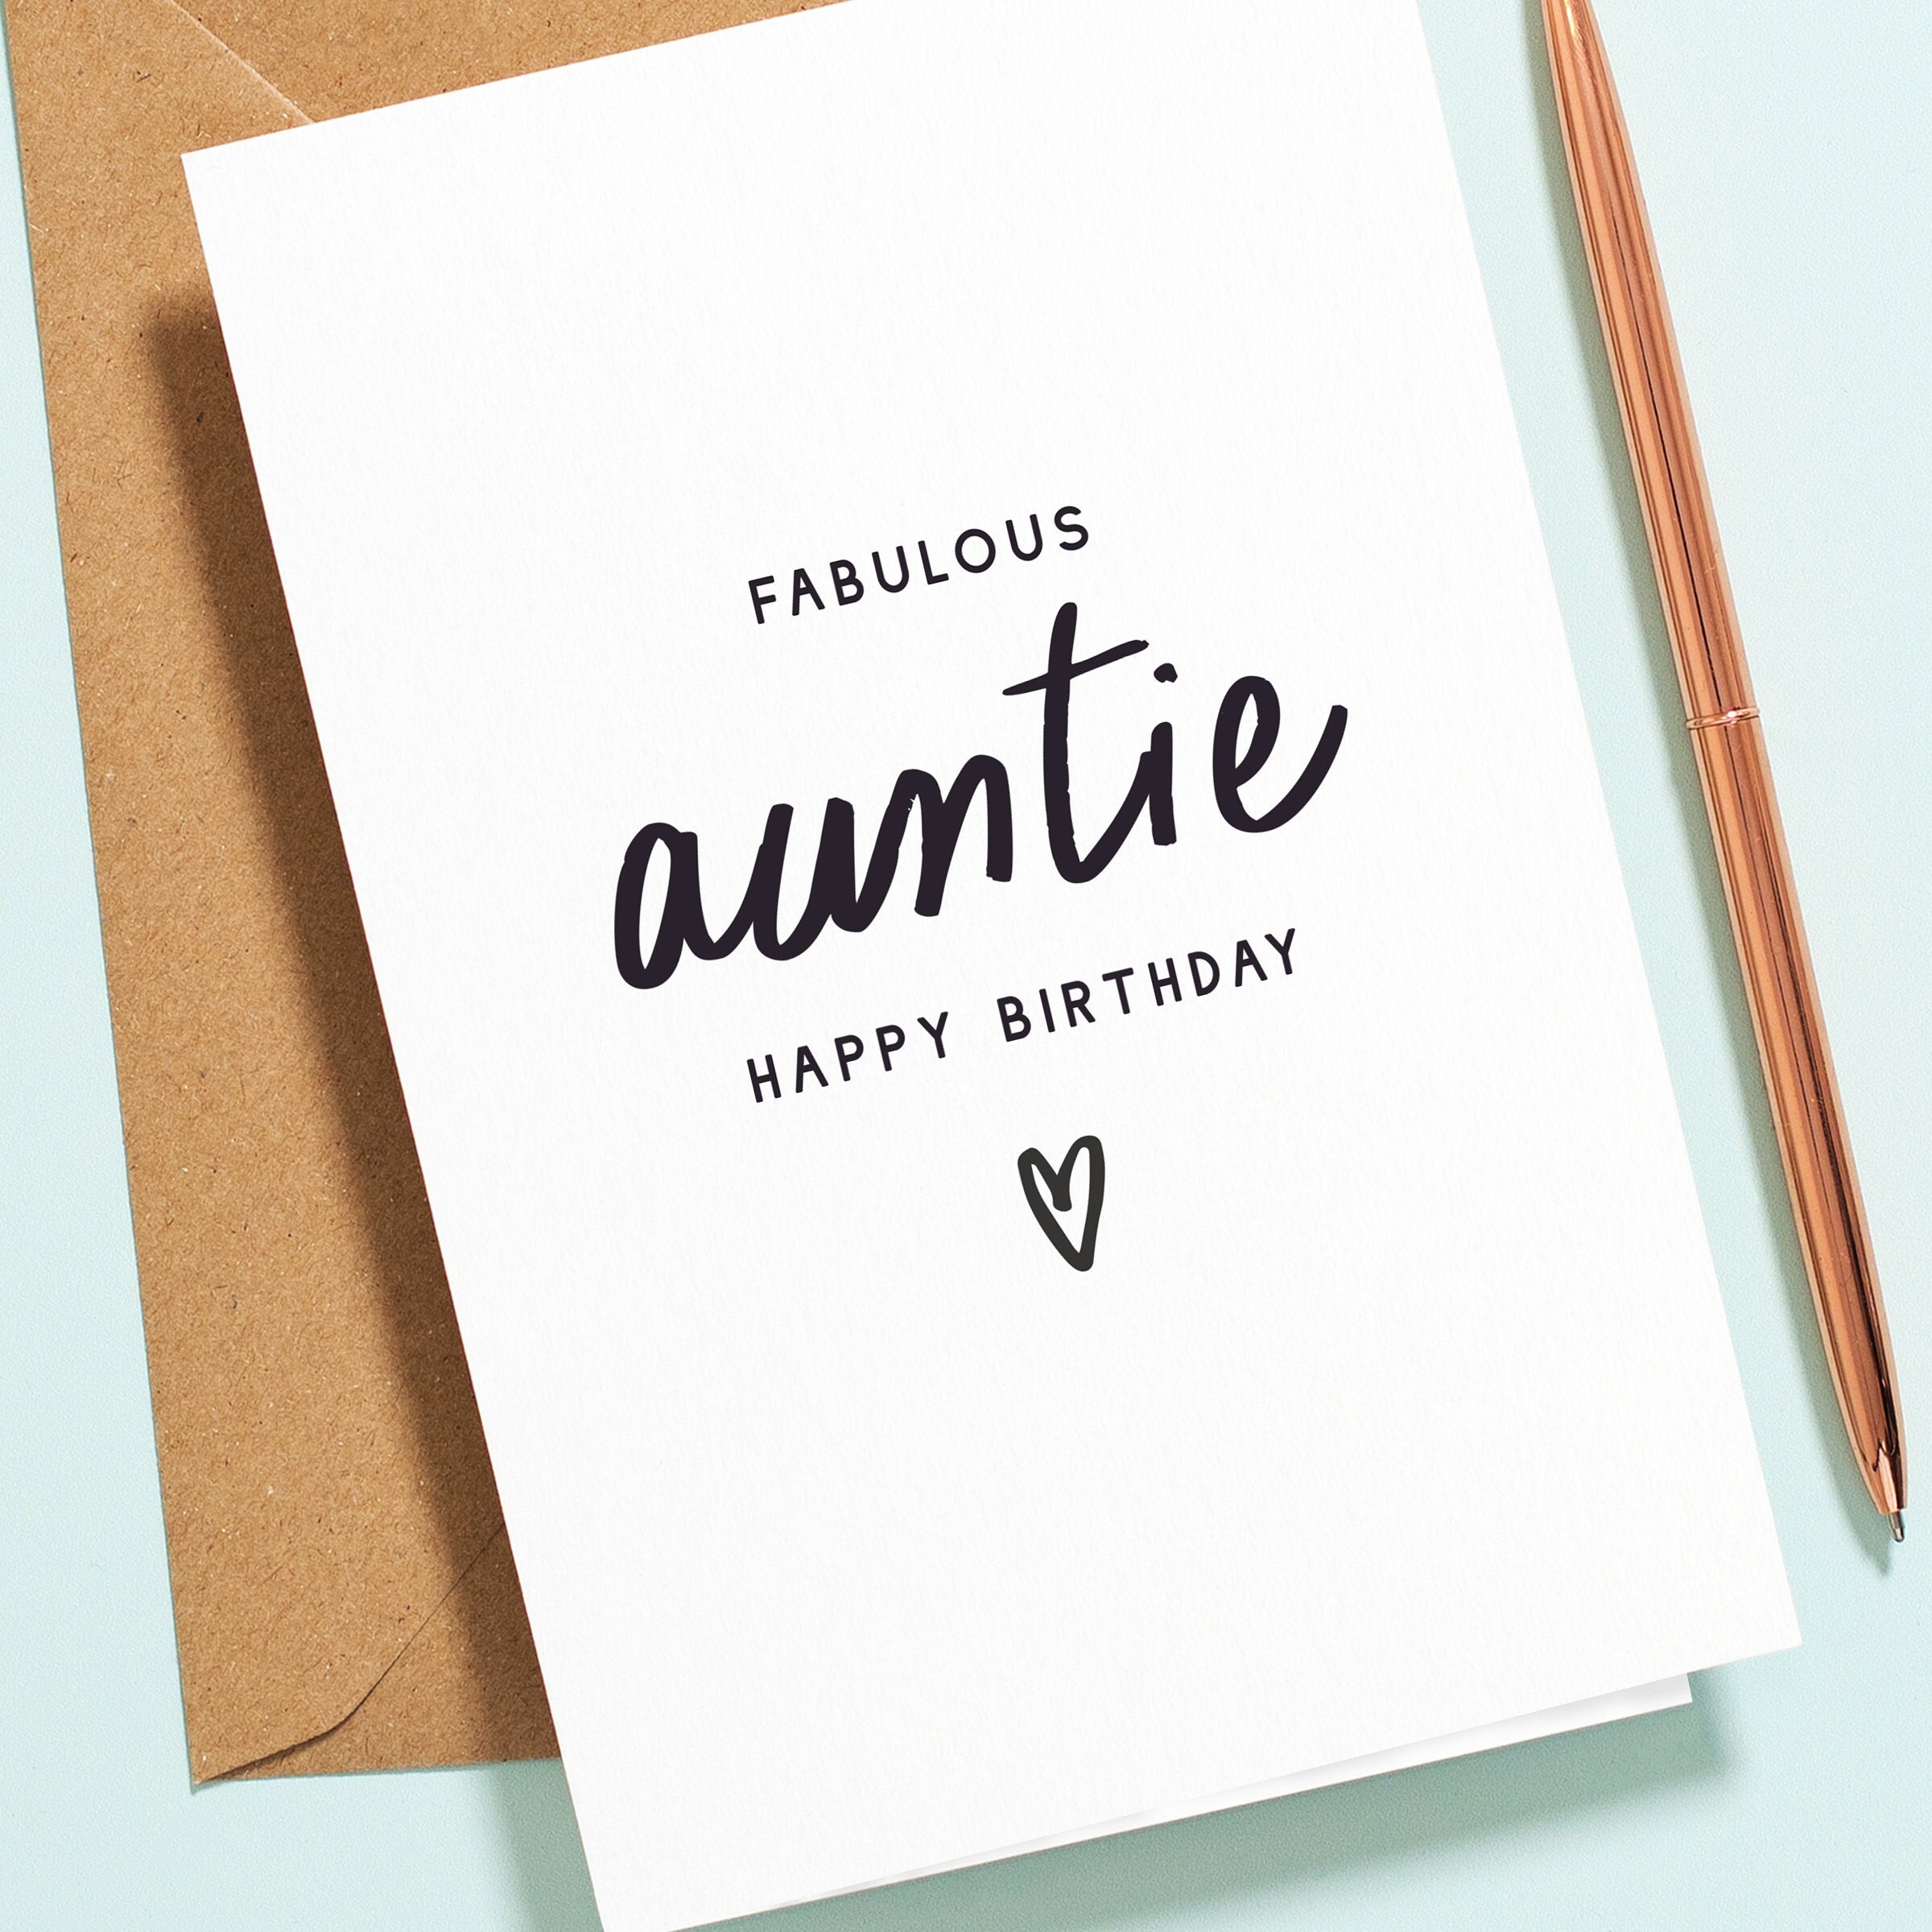 Auntie Birthday Card to My Fabulous Auntie Happy Birthday photo